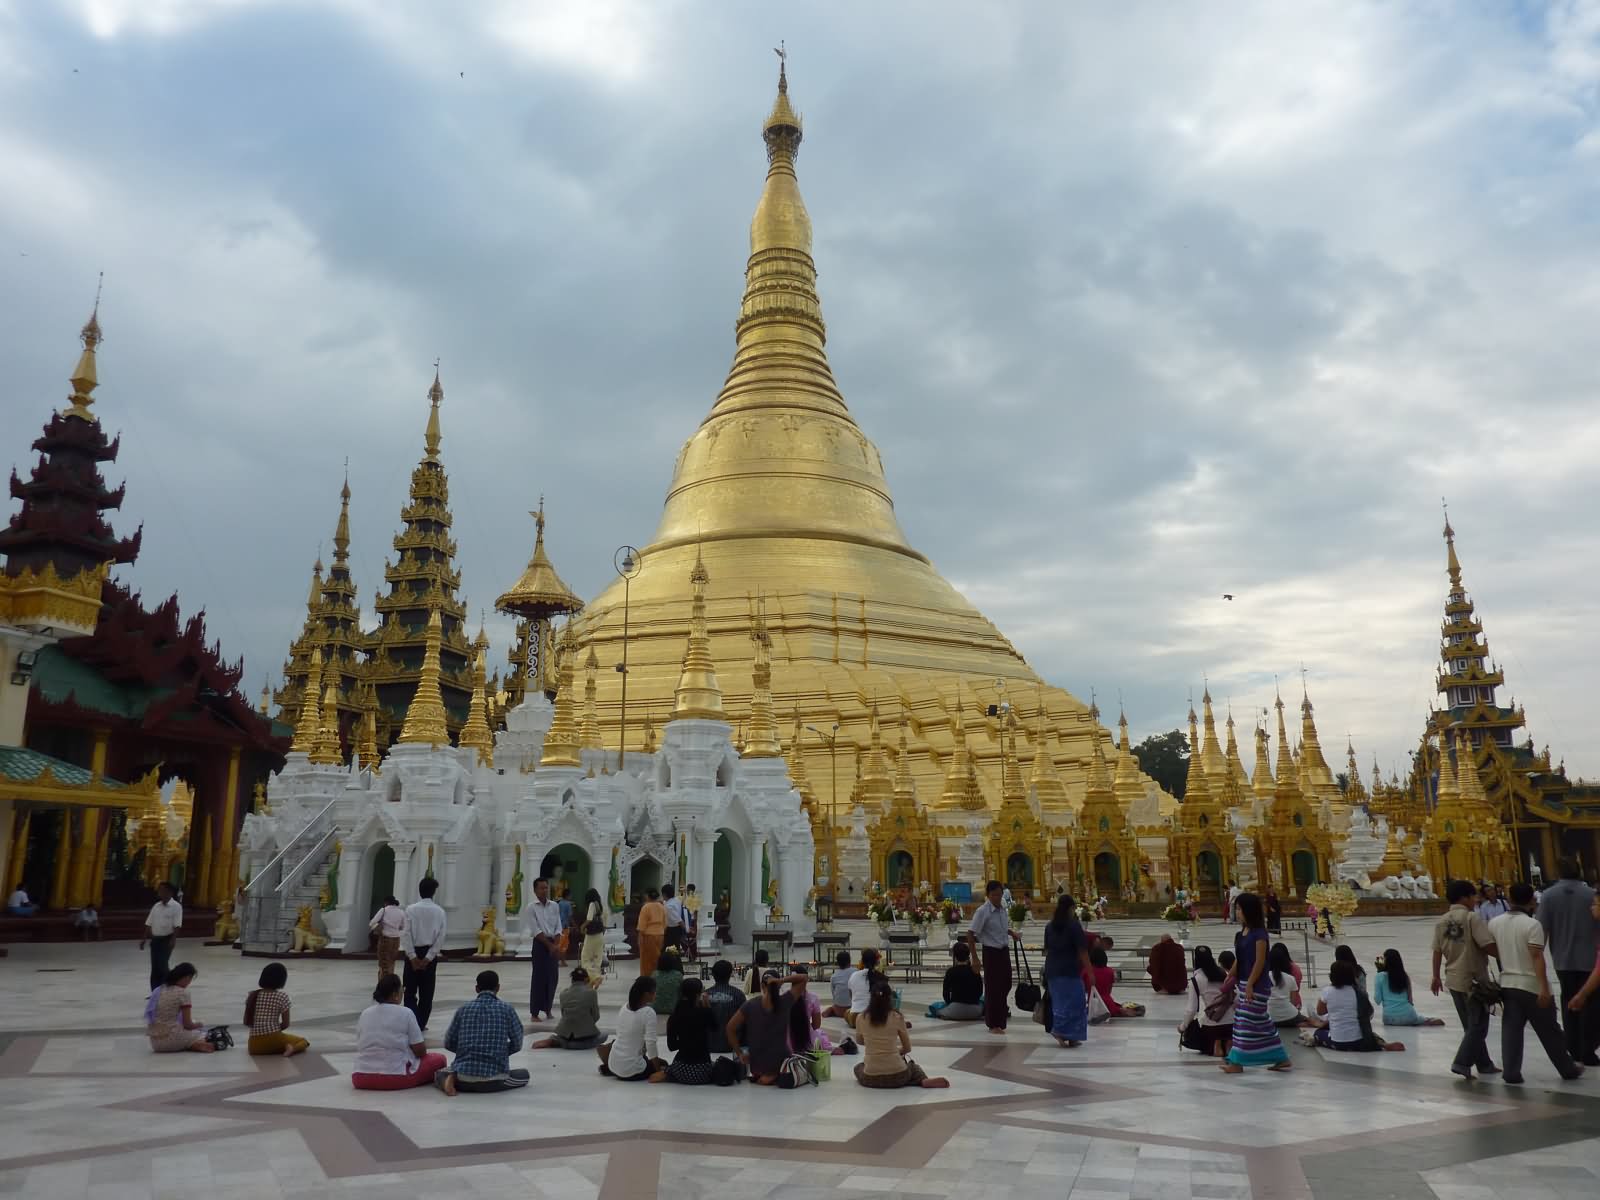 Day Time View Of The Shwedagon Pagoda, Yangon